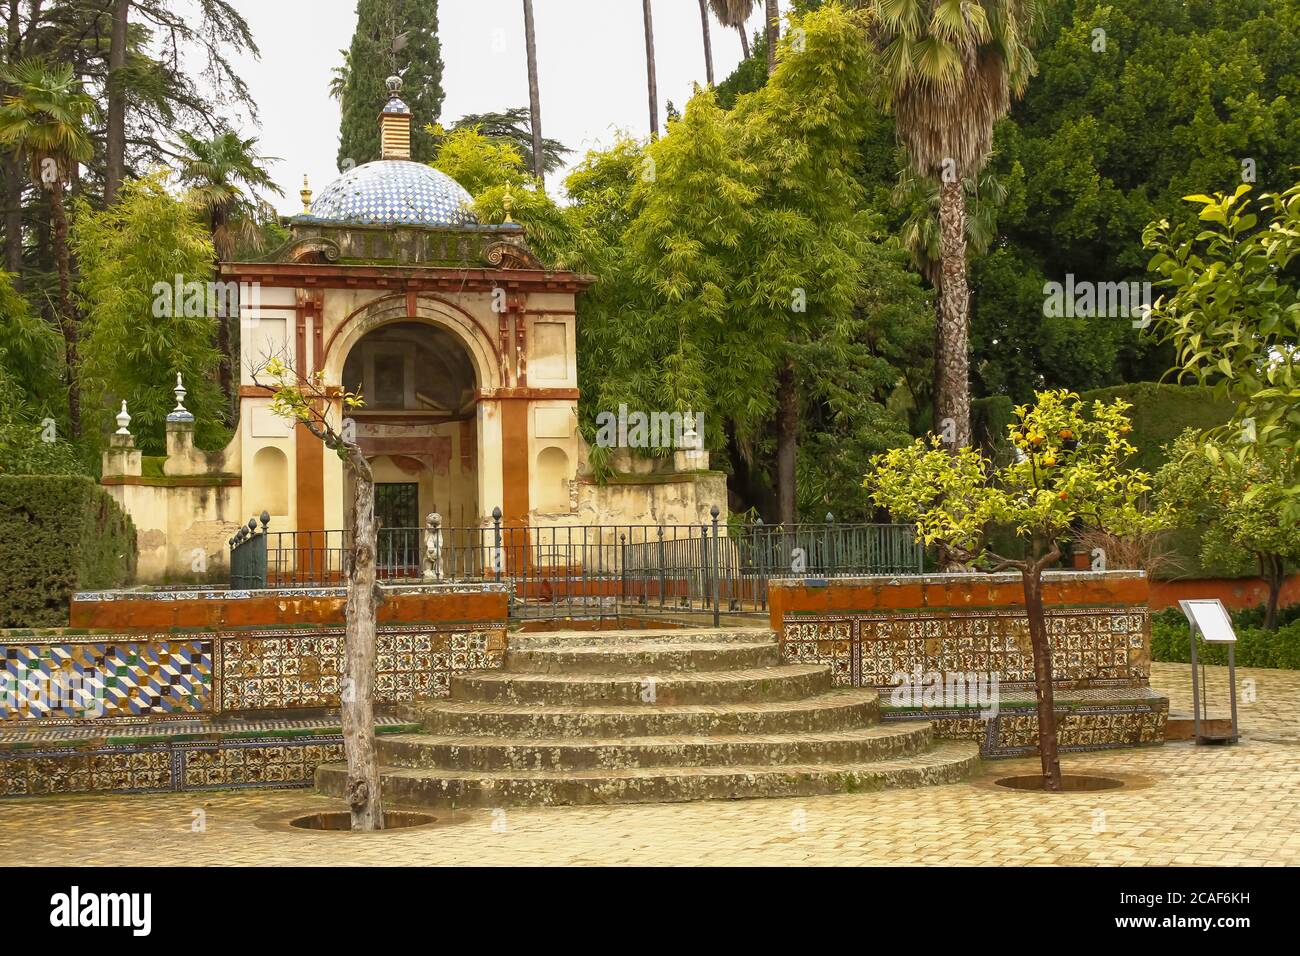 Real Alcazar Gärten in Sevilla Spanien - Natur und Architektur Hintergrund Stockfoto